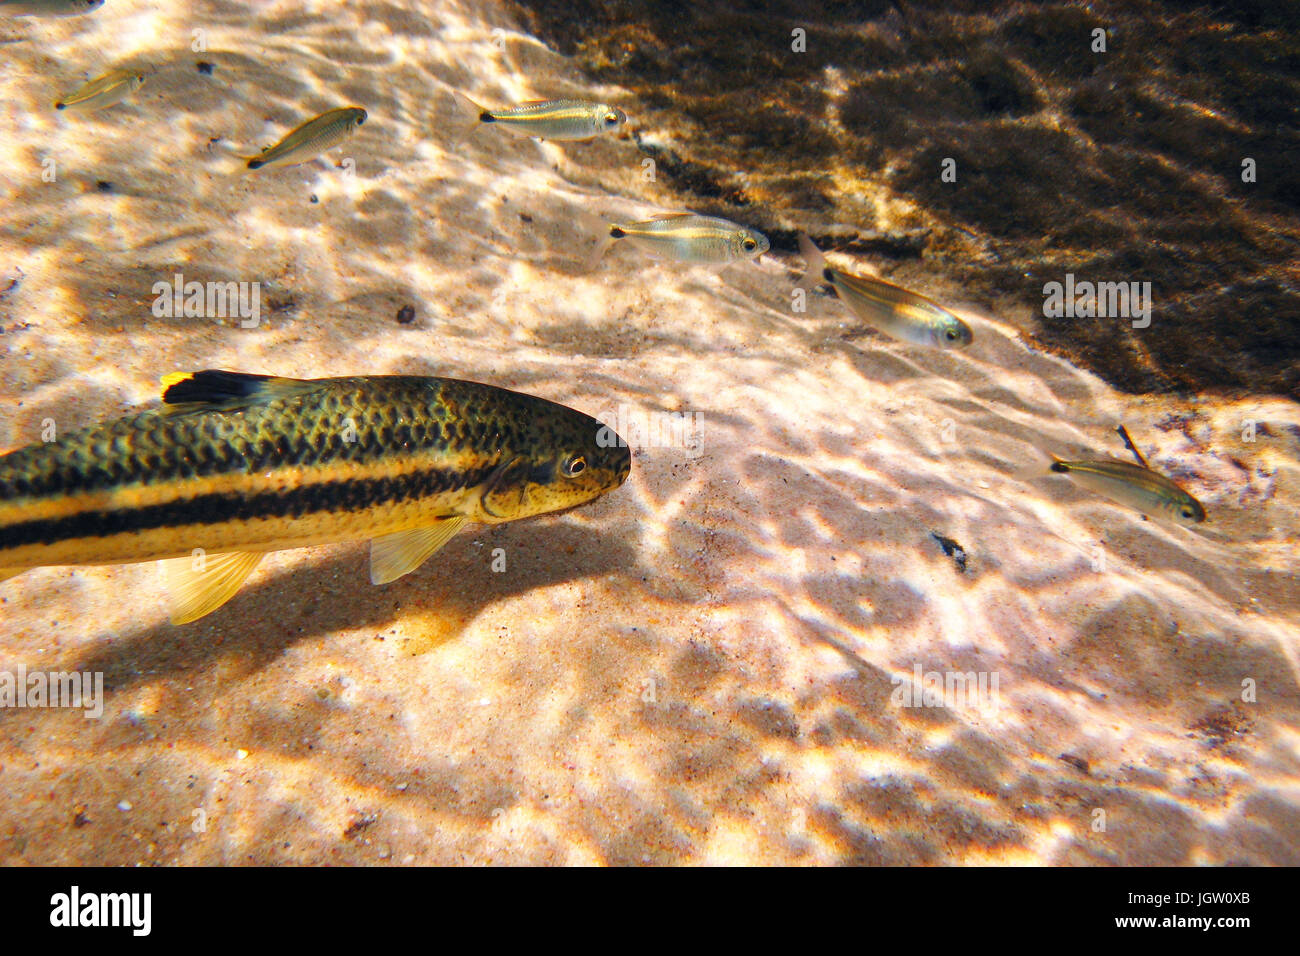 Fish, Joaninha, Crenicichla vittata, Bonito, Mato Grosso do Sul, Brazil Stock Photo